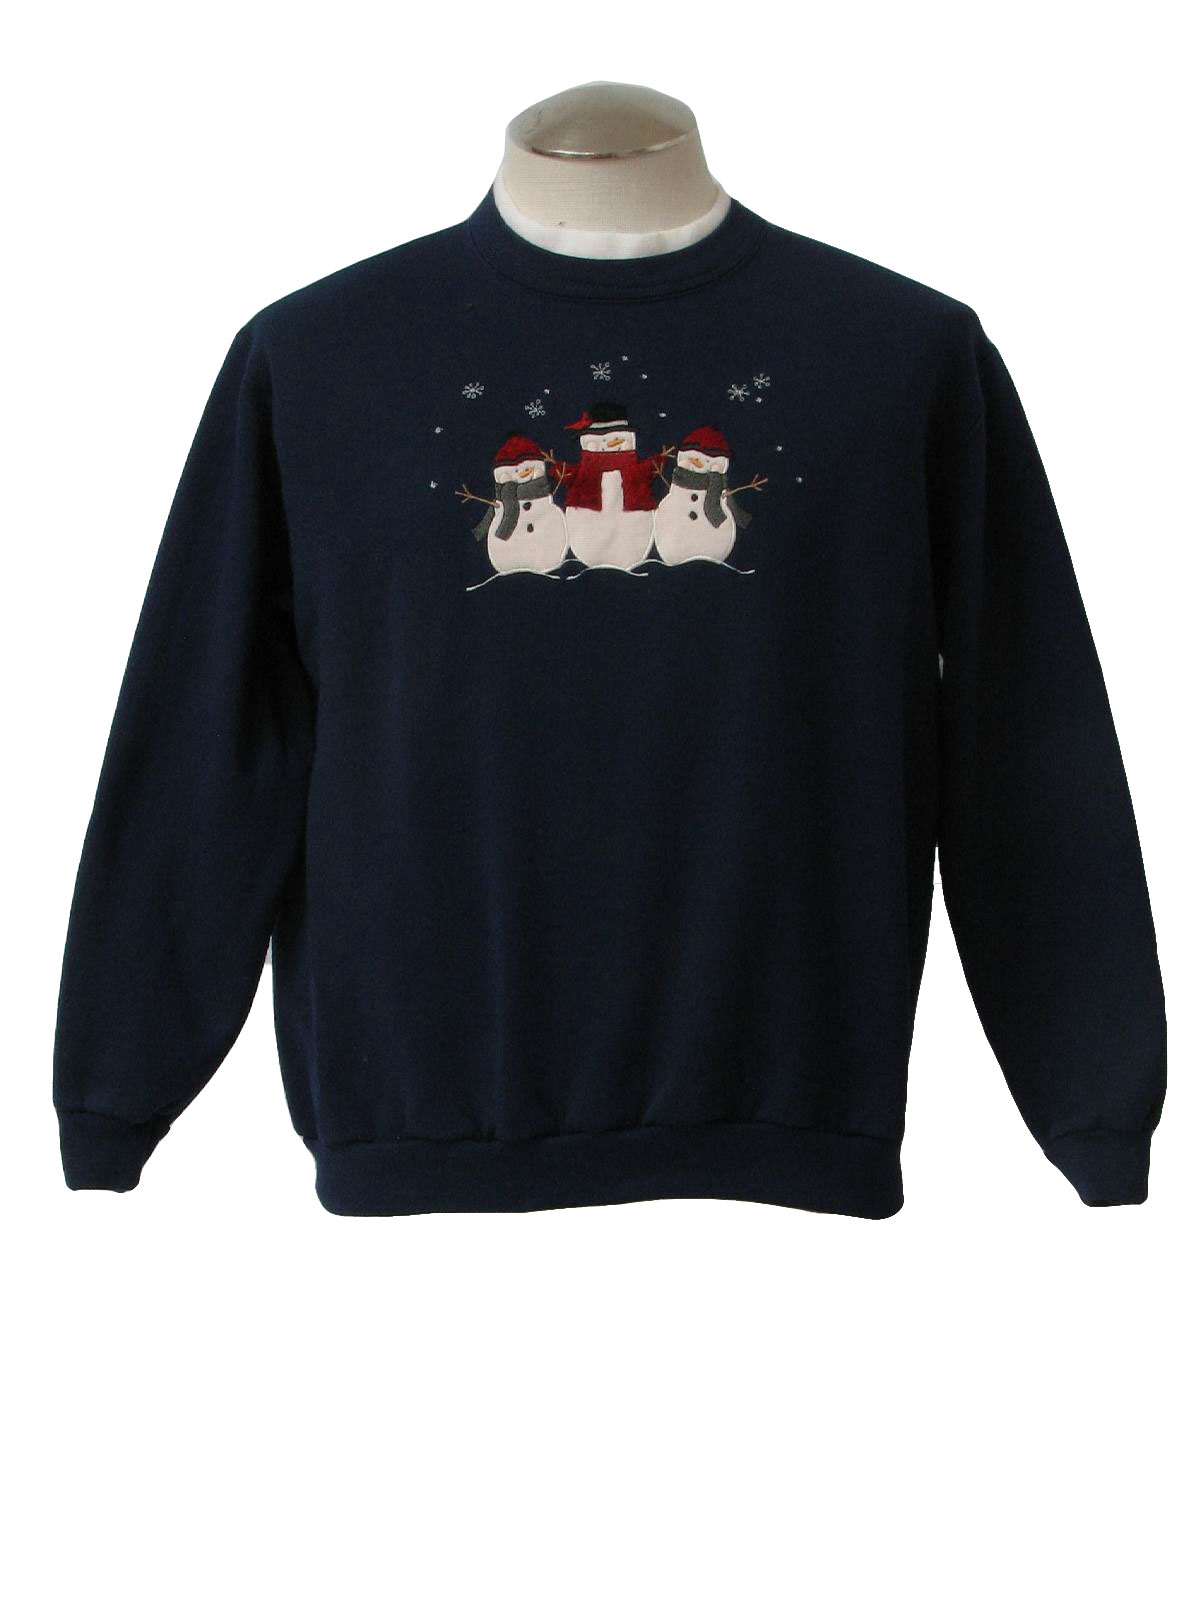 Ugly Christmas Sweatshirt 2021